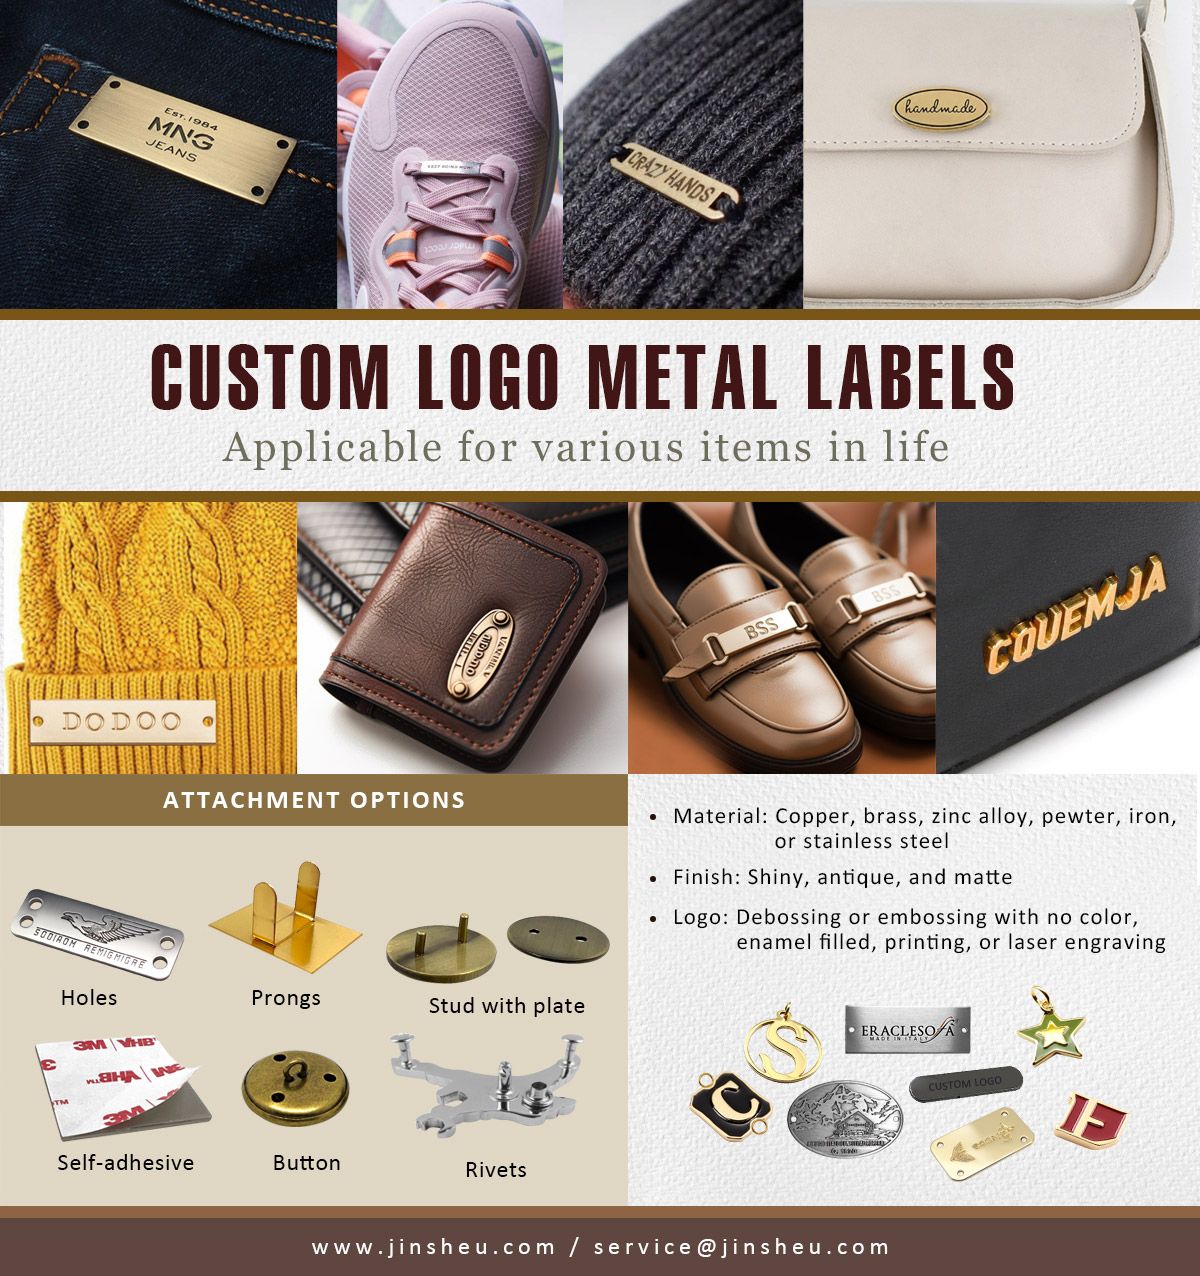 Aangepaste metalen labels met merklogo's